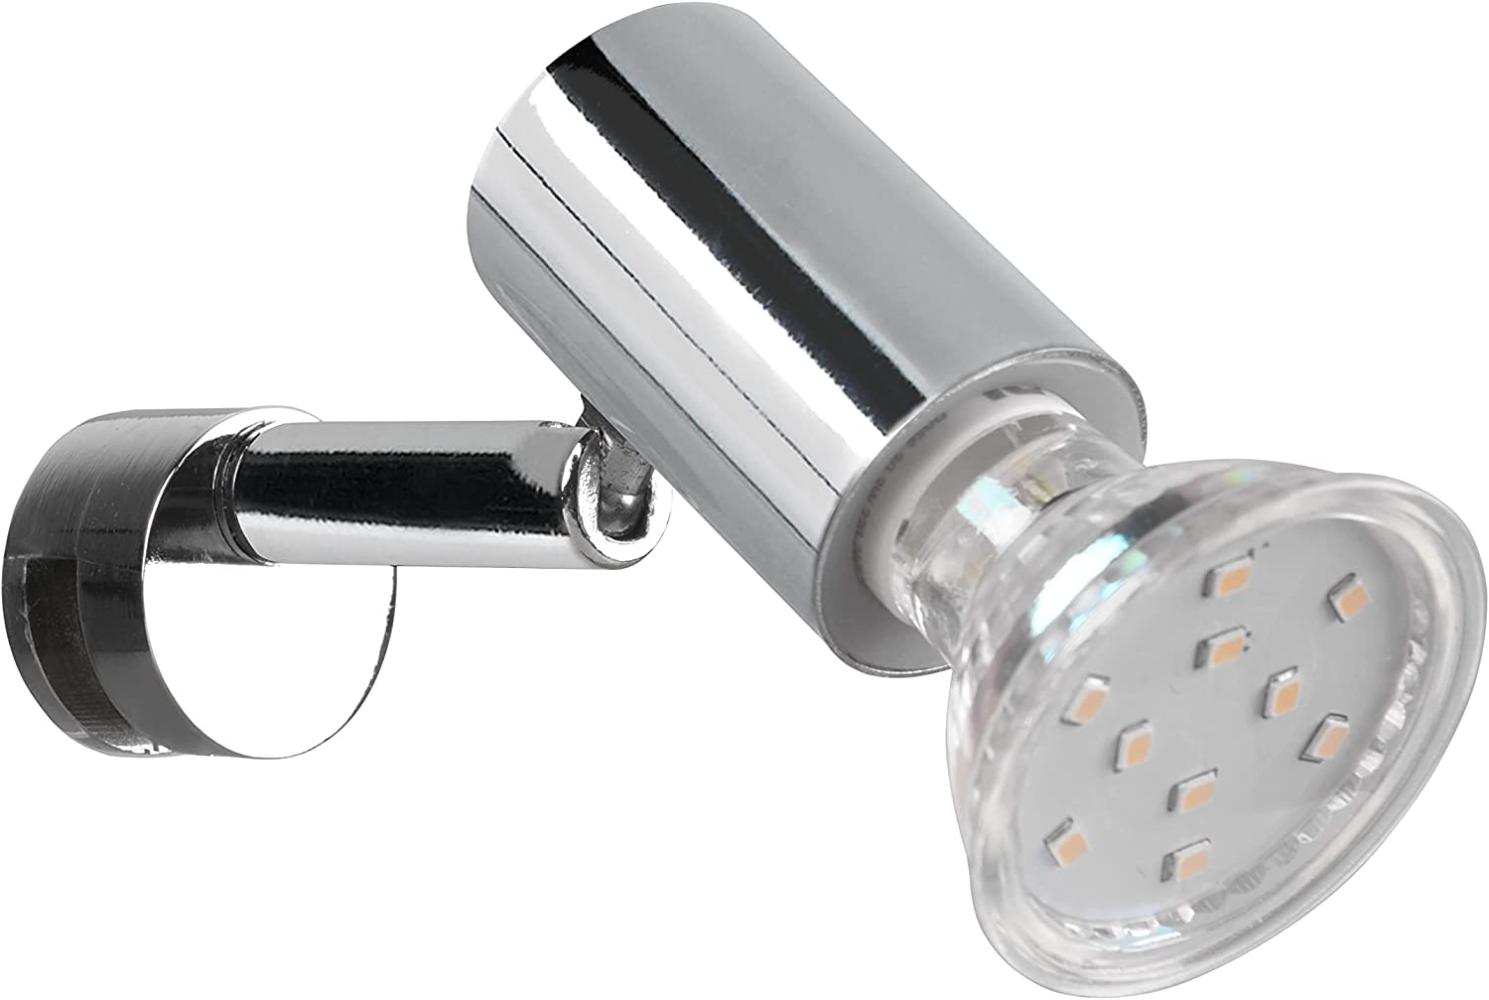 Badezimmerlampe LORENZO in Chrom - Spiegelklemmleuchte mit schwenkbarem Spot Bild 1